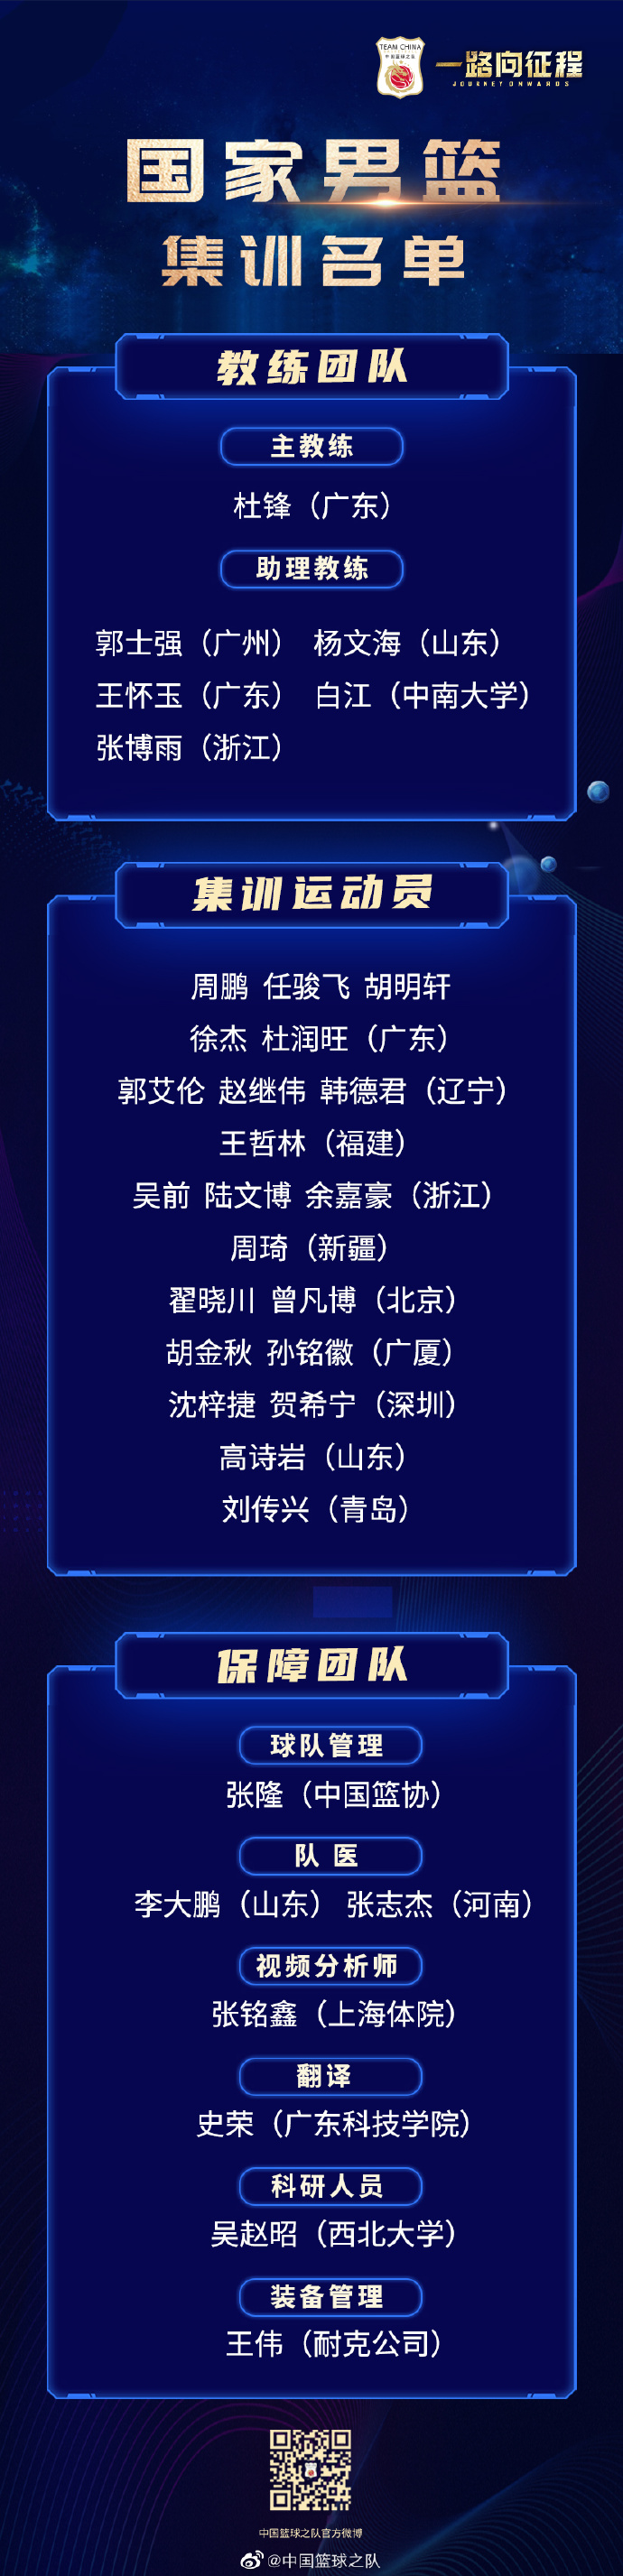 中国男篮亚预赛集训名单出炉 周琦、郭艾伦领衔